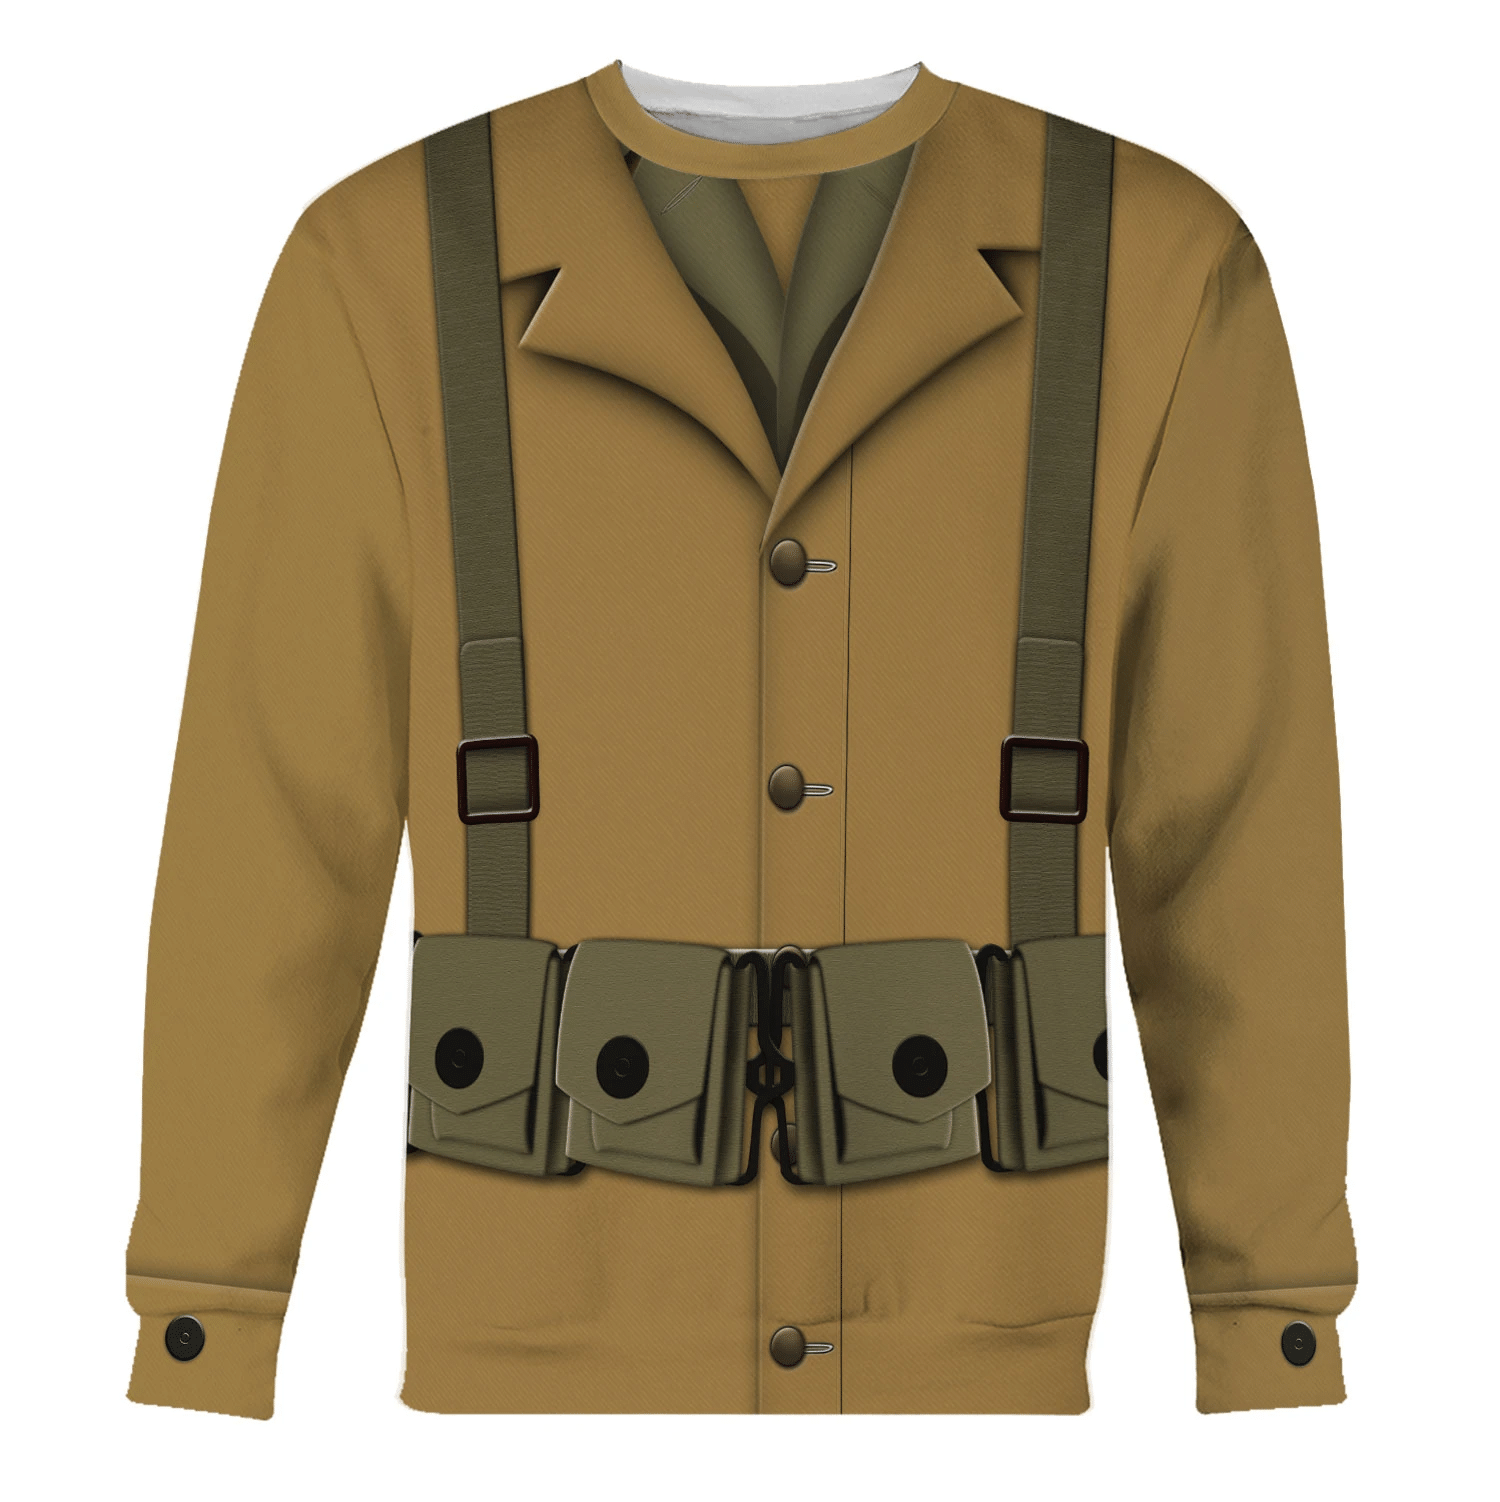 Gearhomie US Army WW1 Infantryman Costume sweatshirt